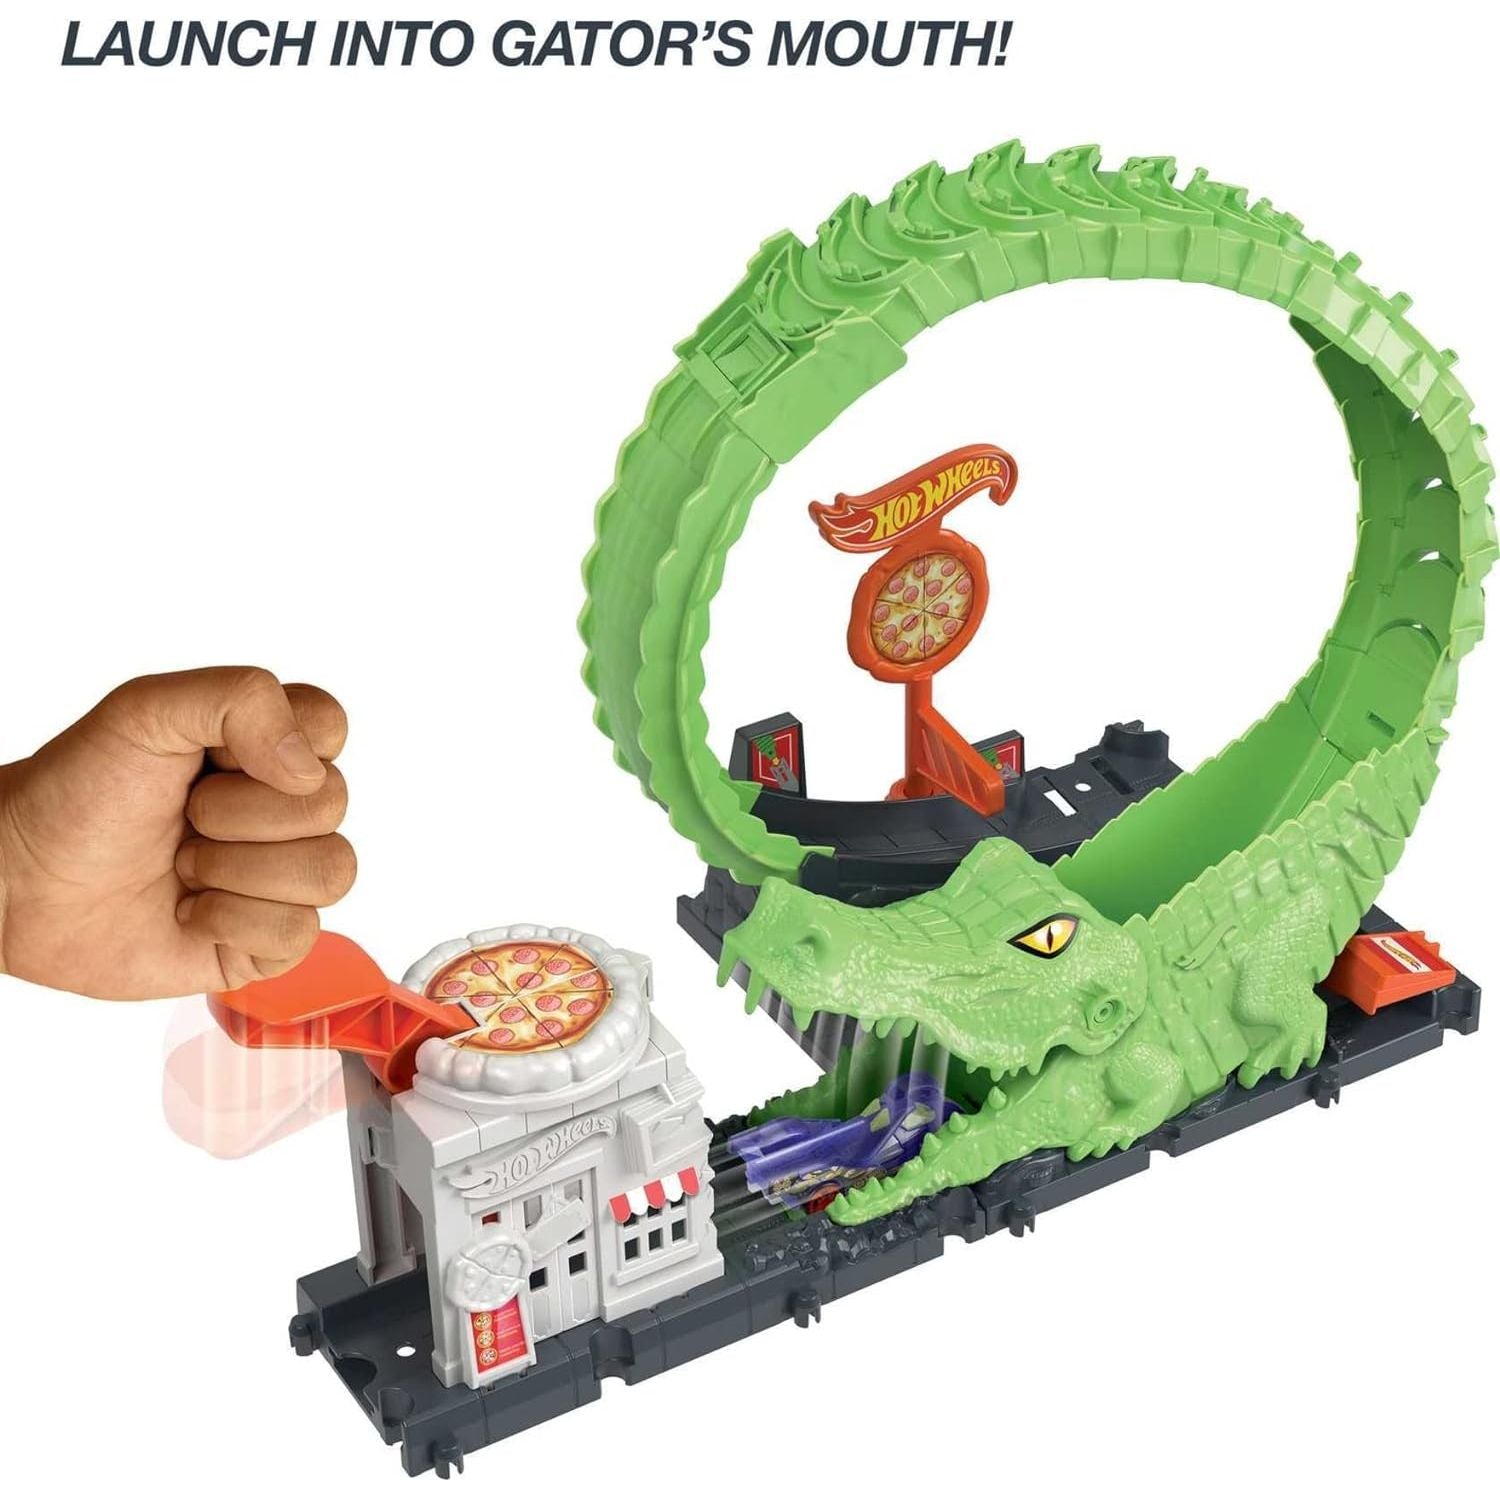 مجموعة مسار سيارة لعبة هوت ويلز، مجموعة ألعاب هجوم حلقة التمساح في مكان البيتزا مع سيارة بمقياس 1؛64، تتصل بمجموعات أخرى